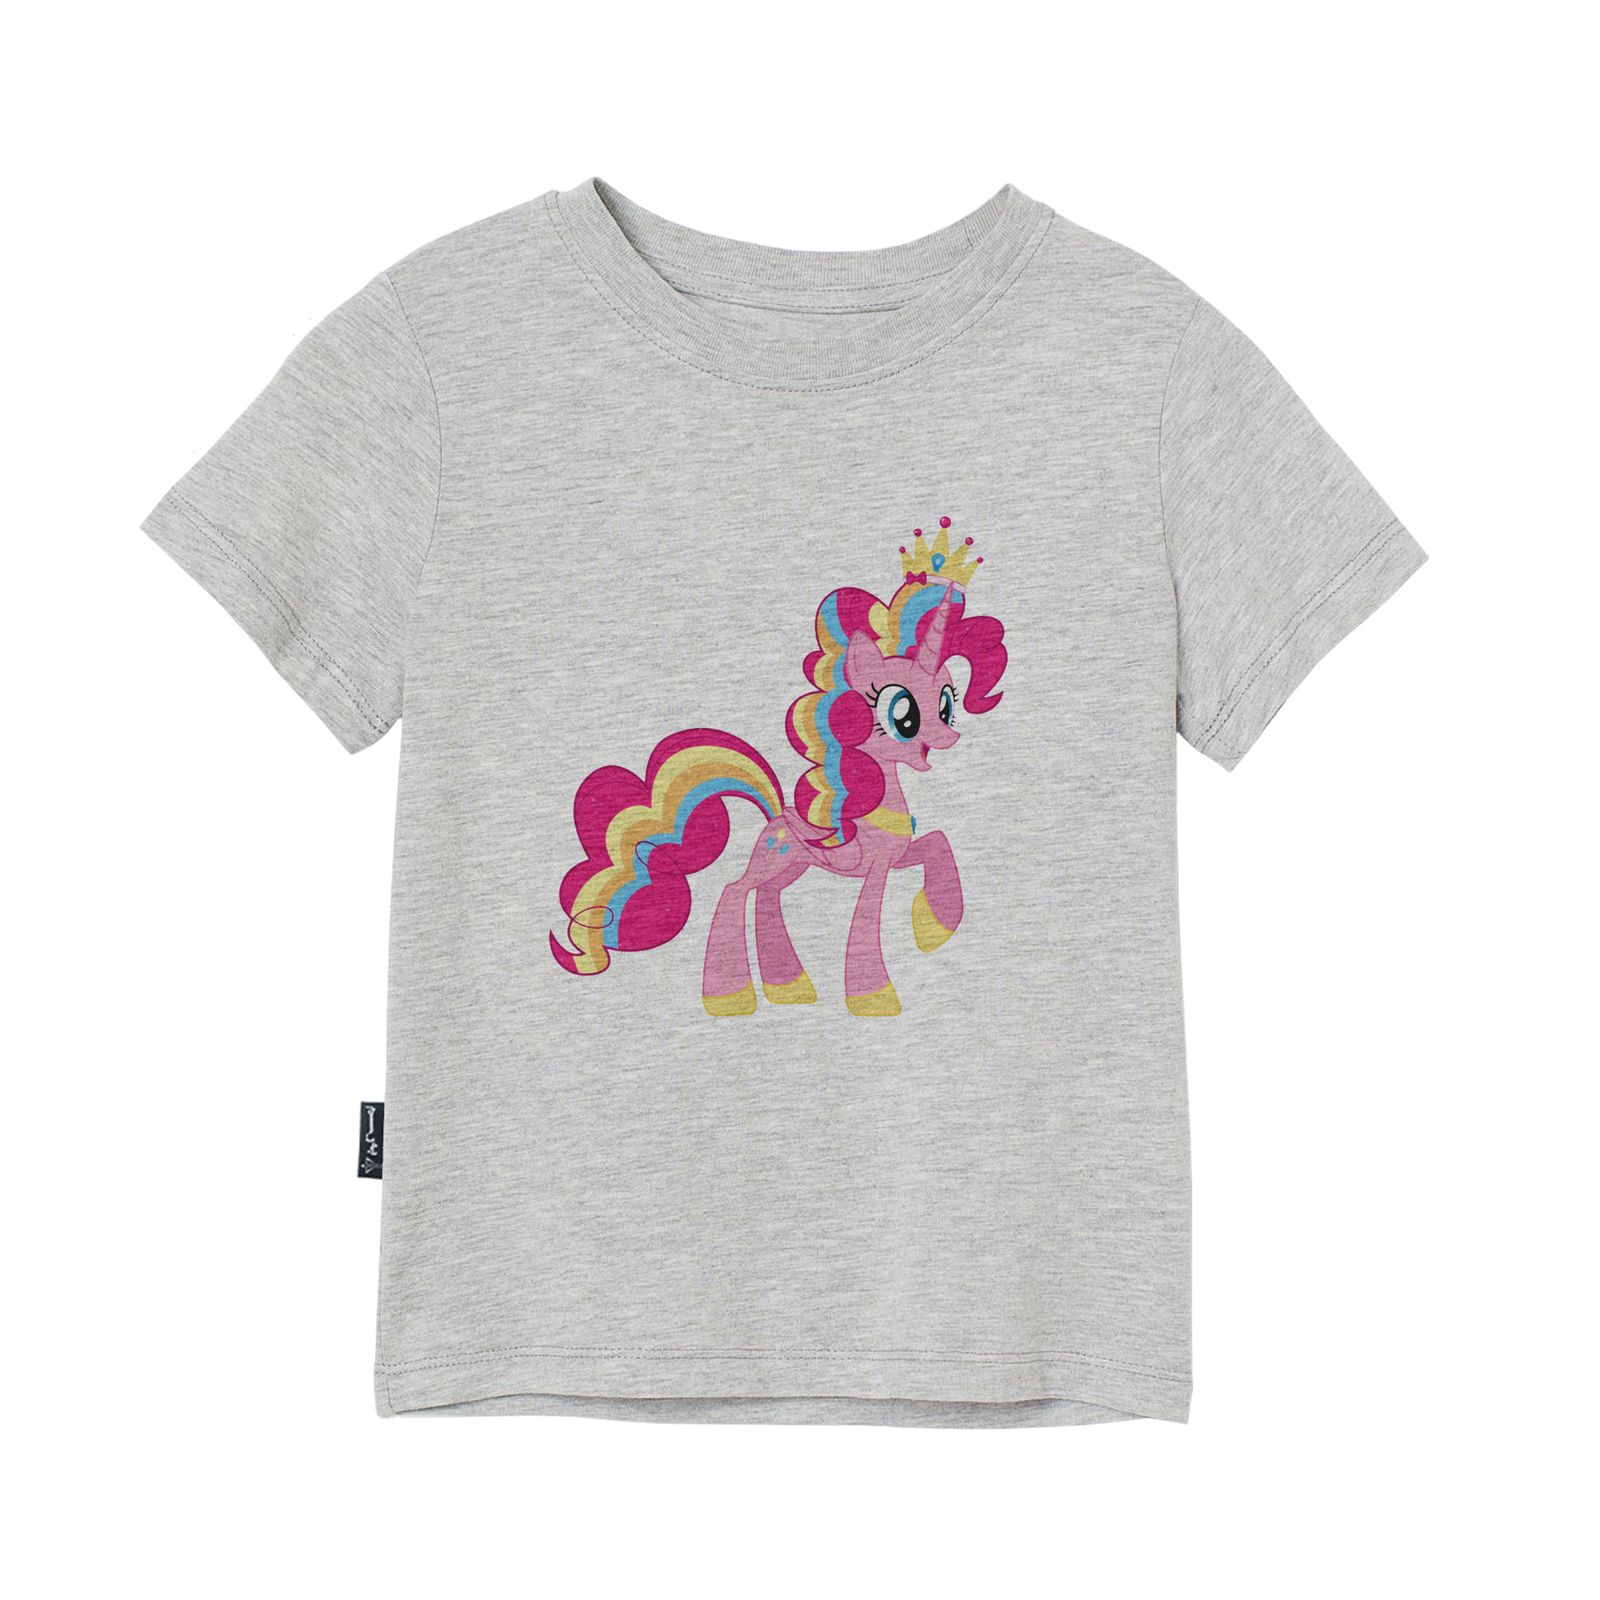 تی شرت آستین کوتاه پسرانه به رسم مدل اسب صورتی کد 1116 -  - 1